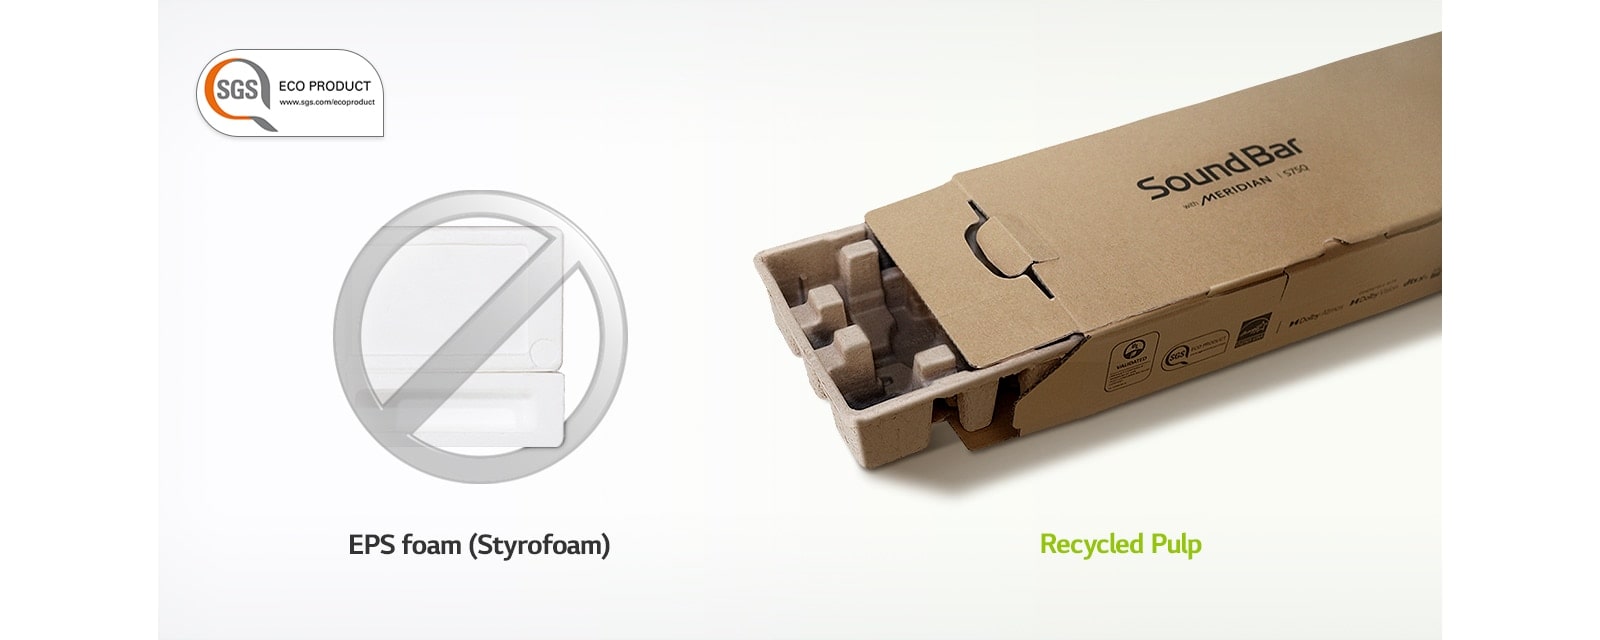 یک علامت ممنوعه خاکستری روی تصویر یونولیت در سمت چپ و تصویر باکس بسته‌بندی در سمت راست وجود دارد.